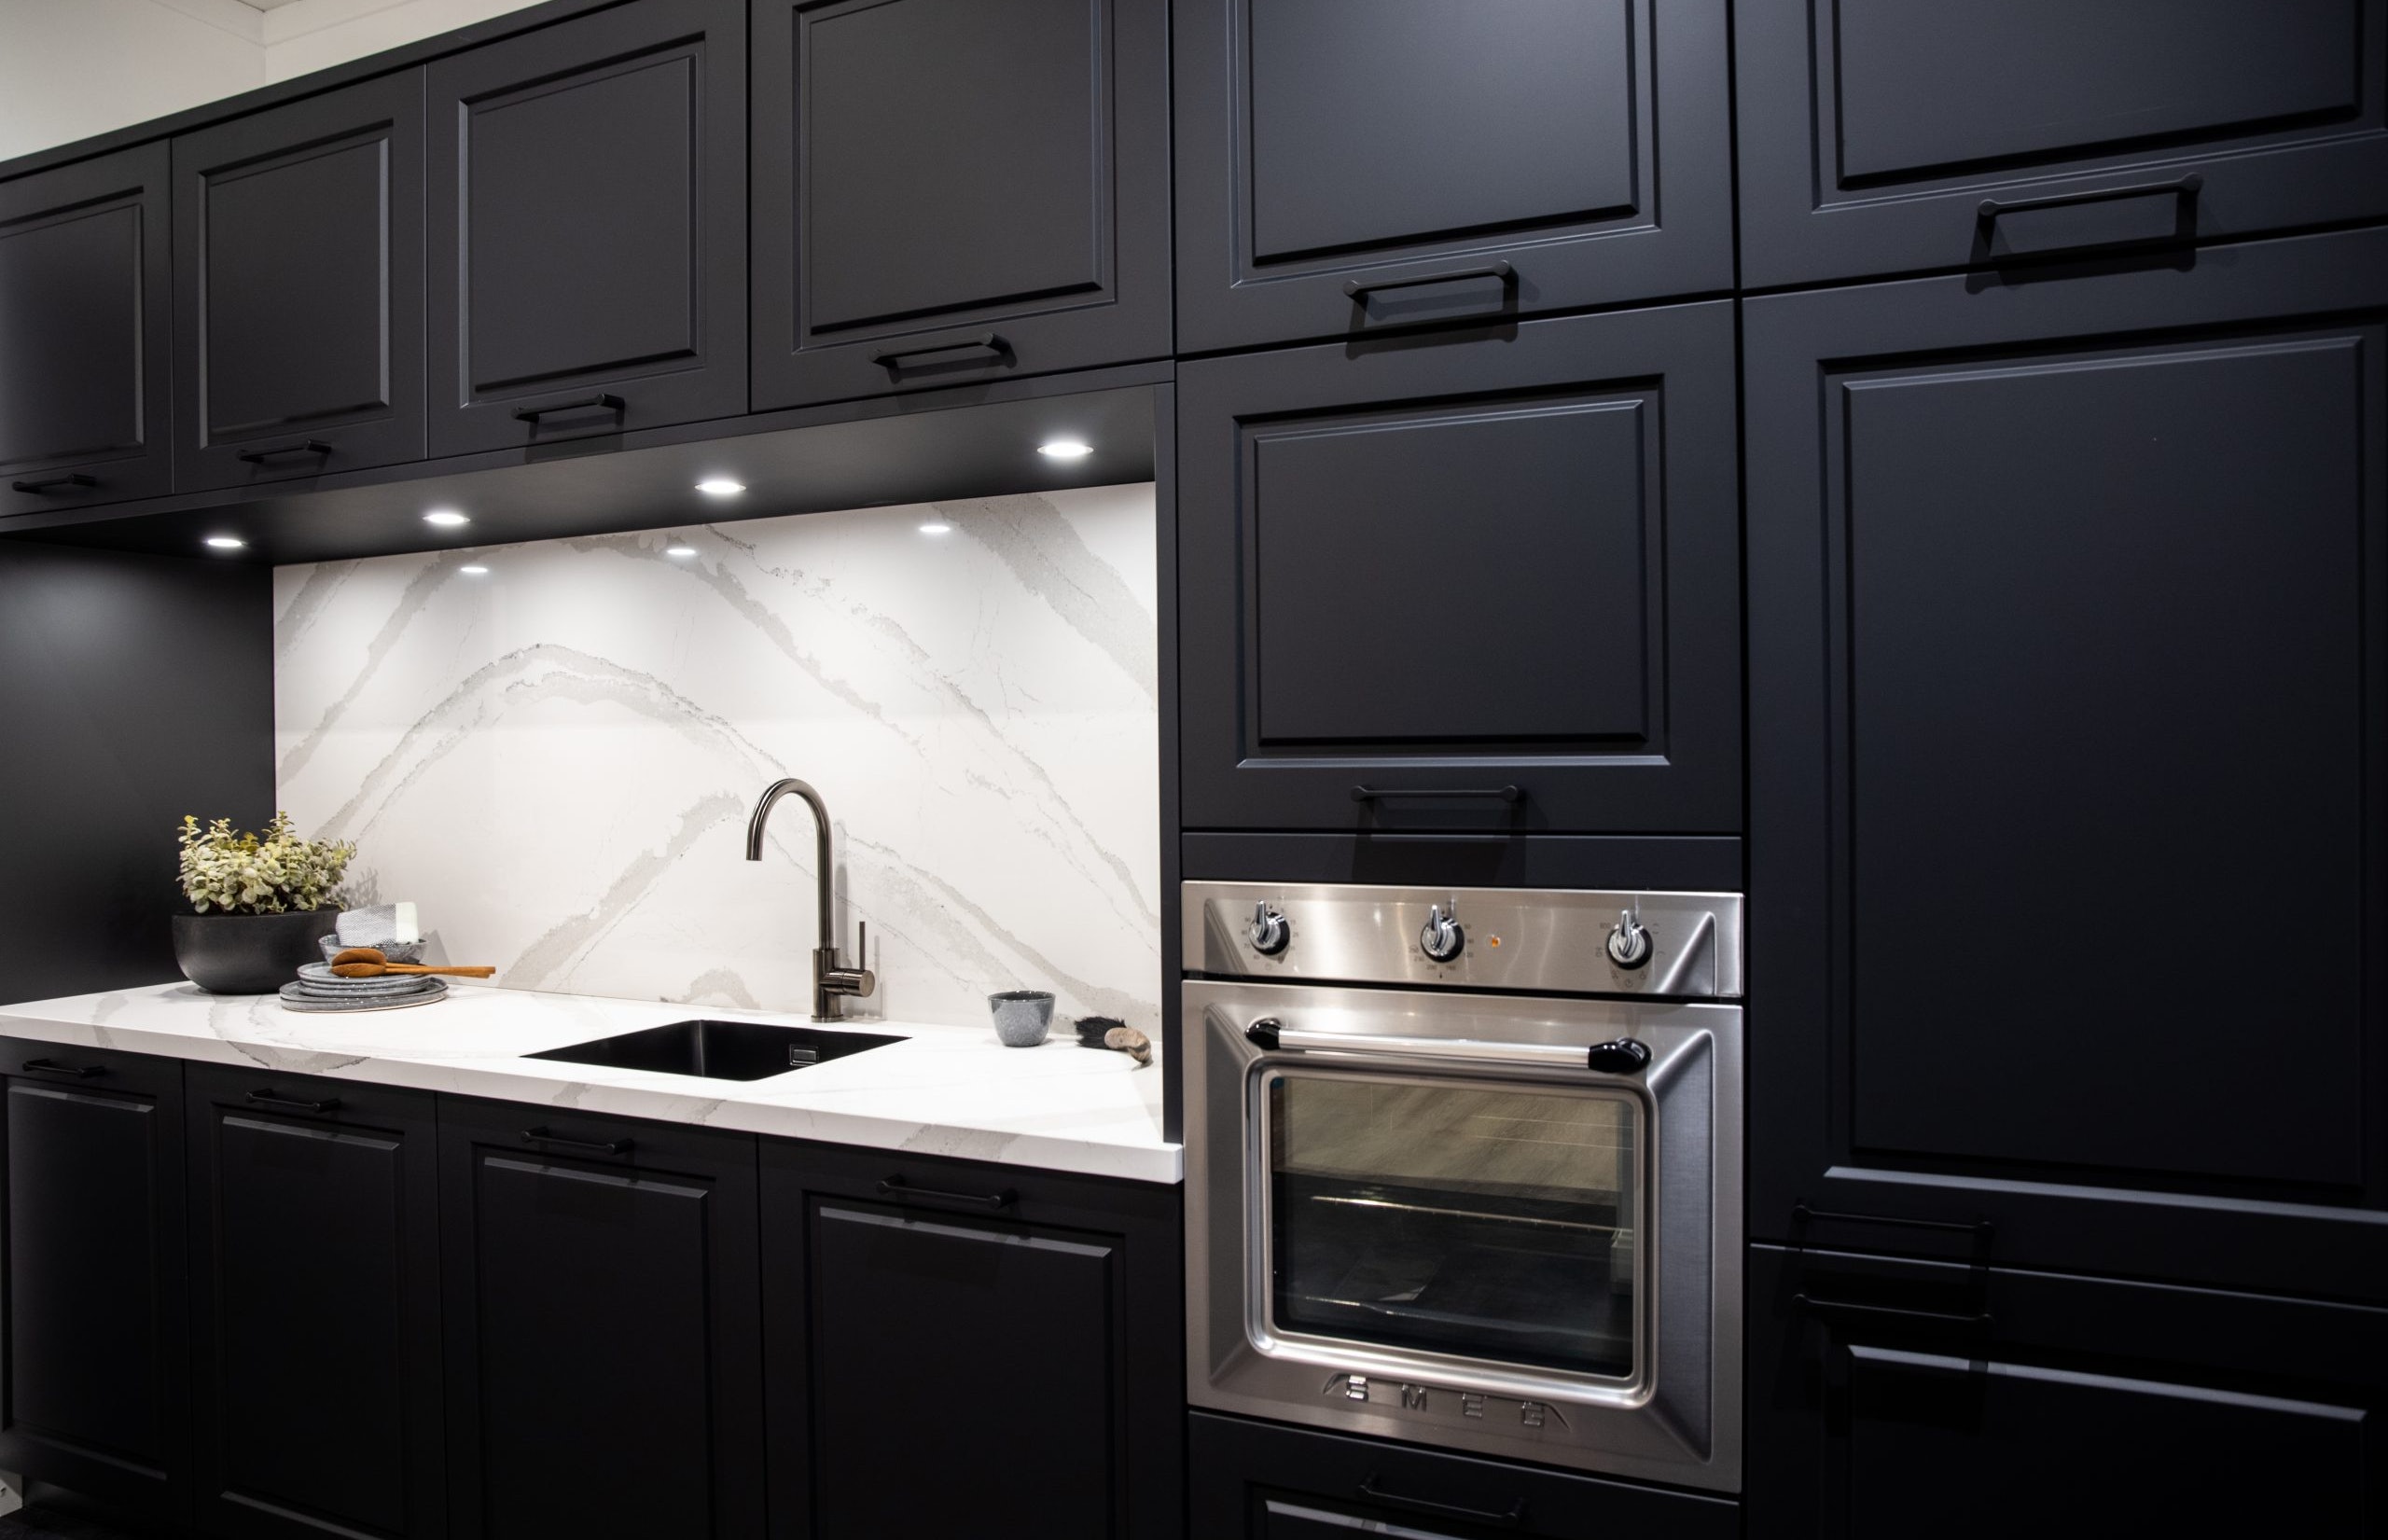 De SMEG oven sluit perfect aan bij de landhuisstijl van deze hoekkeuken - Bemmel & Kroon keukens